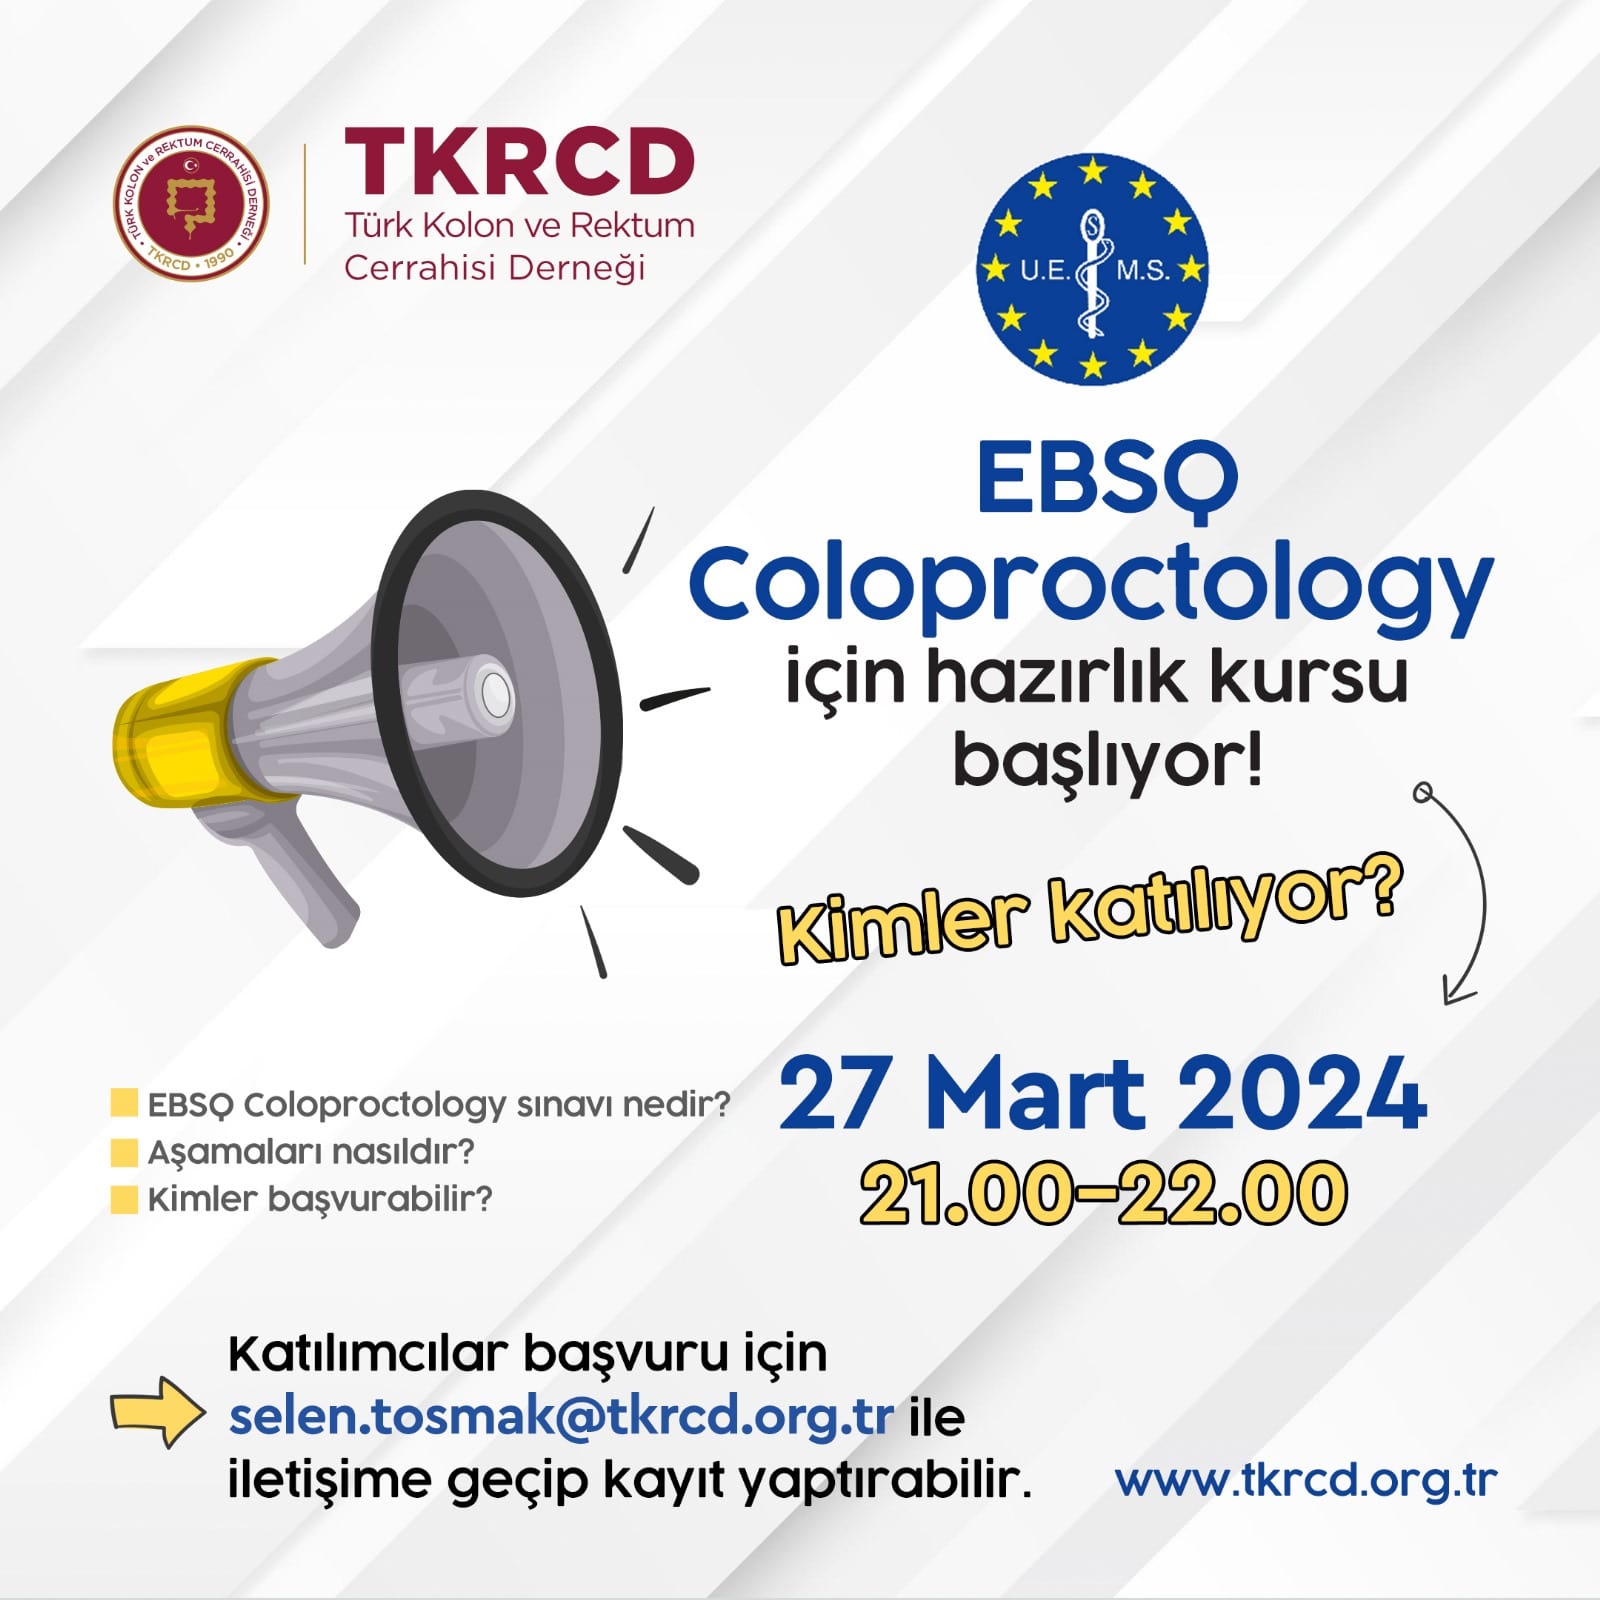 EBSQ Coloproctology için hazırlık kursu başlıyor!